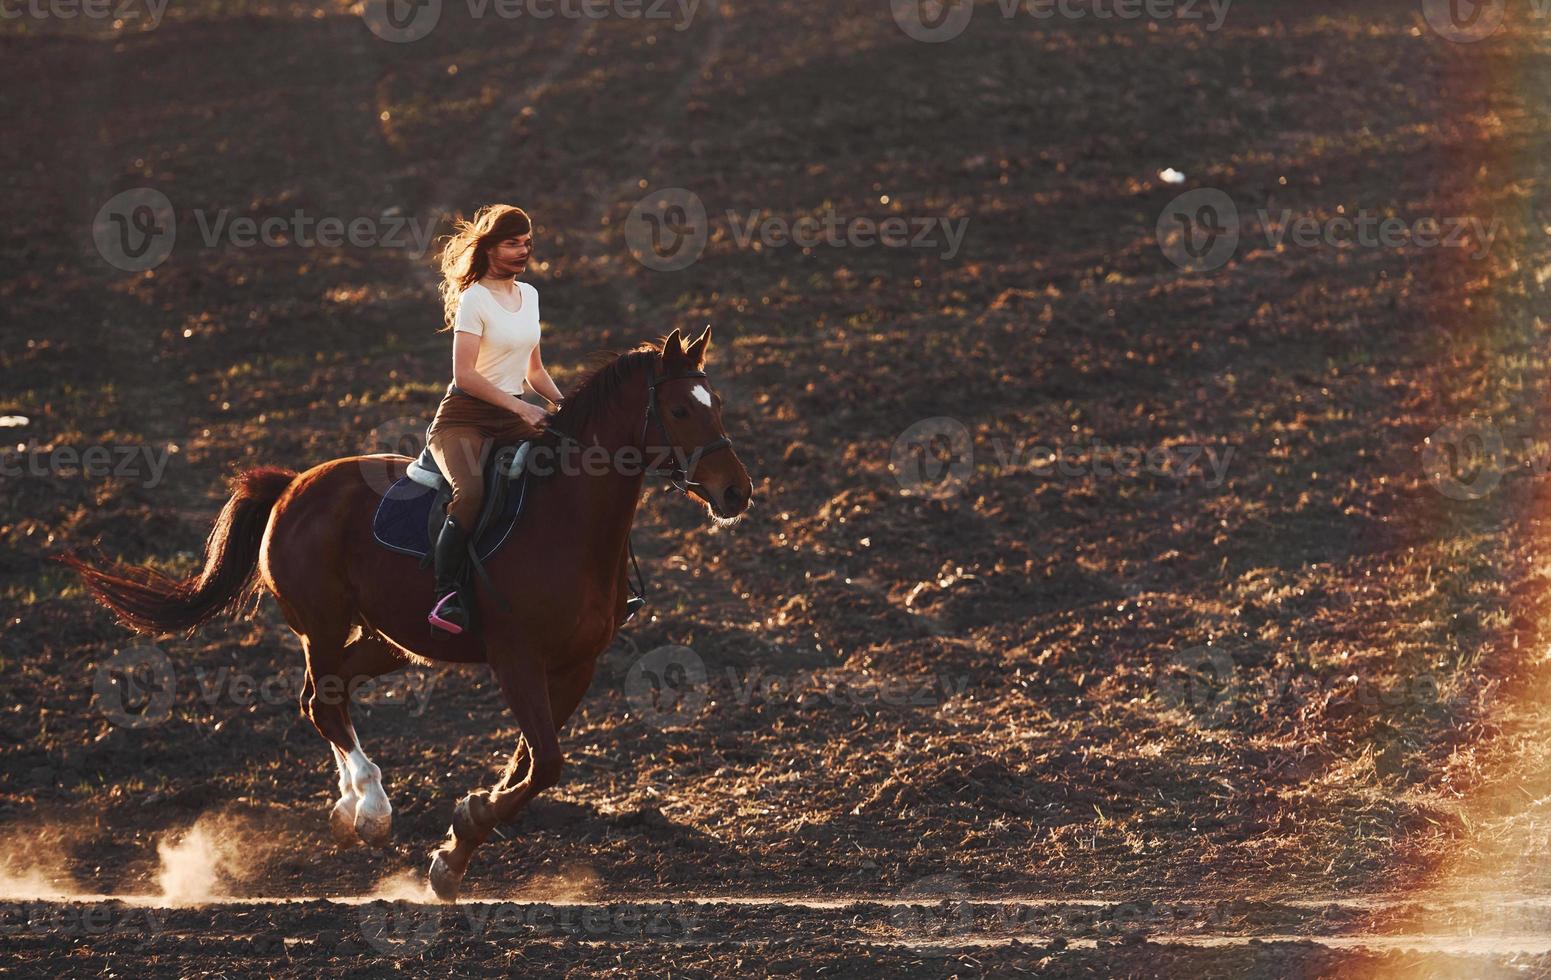 jovem de chapéu protetor montando seu cavalo no campo agrícola durante o dia ensolarado foto